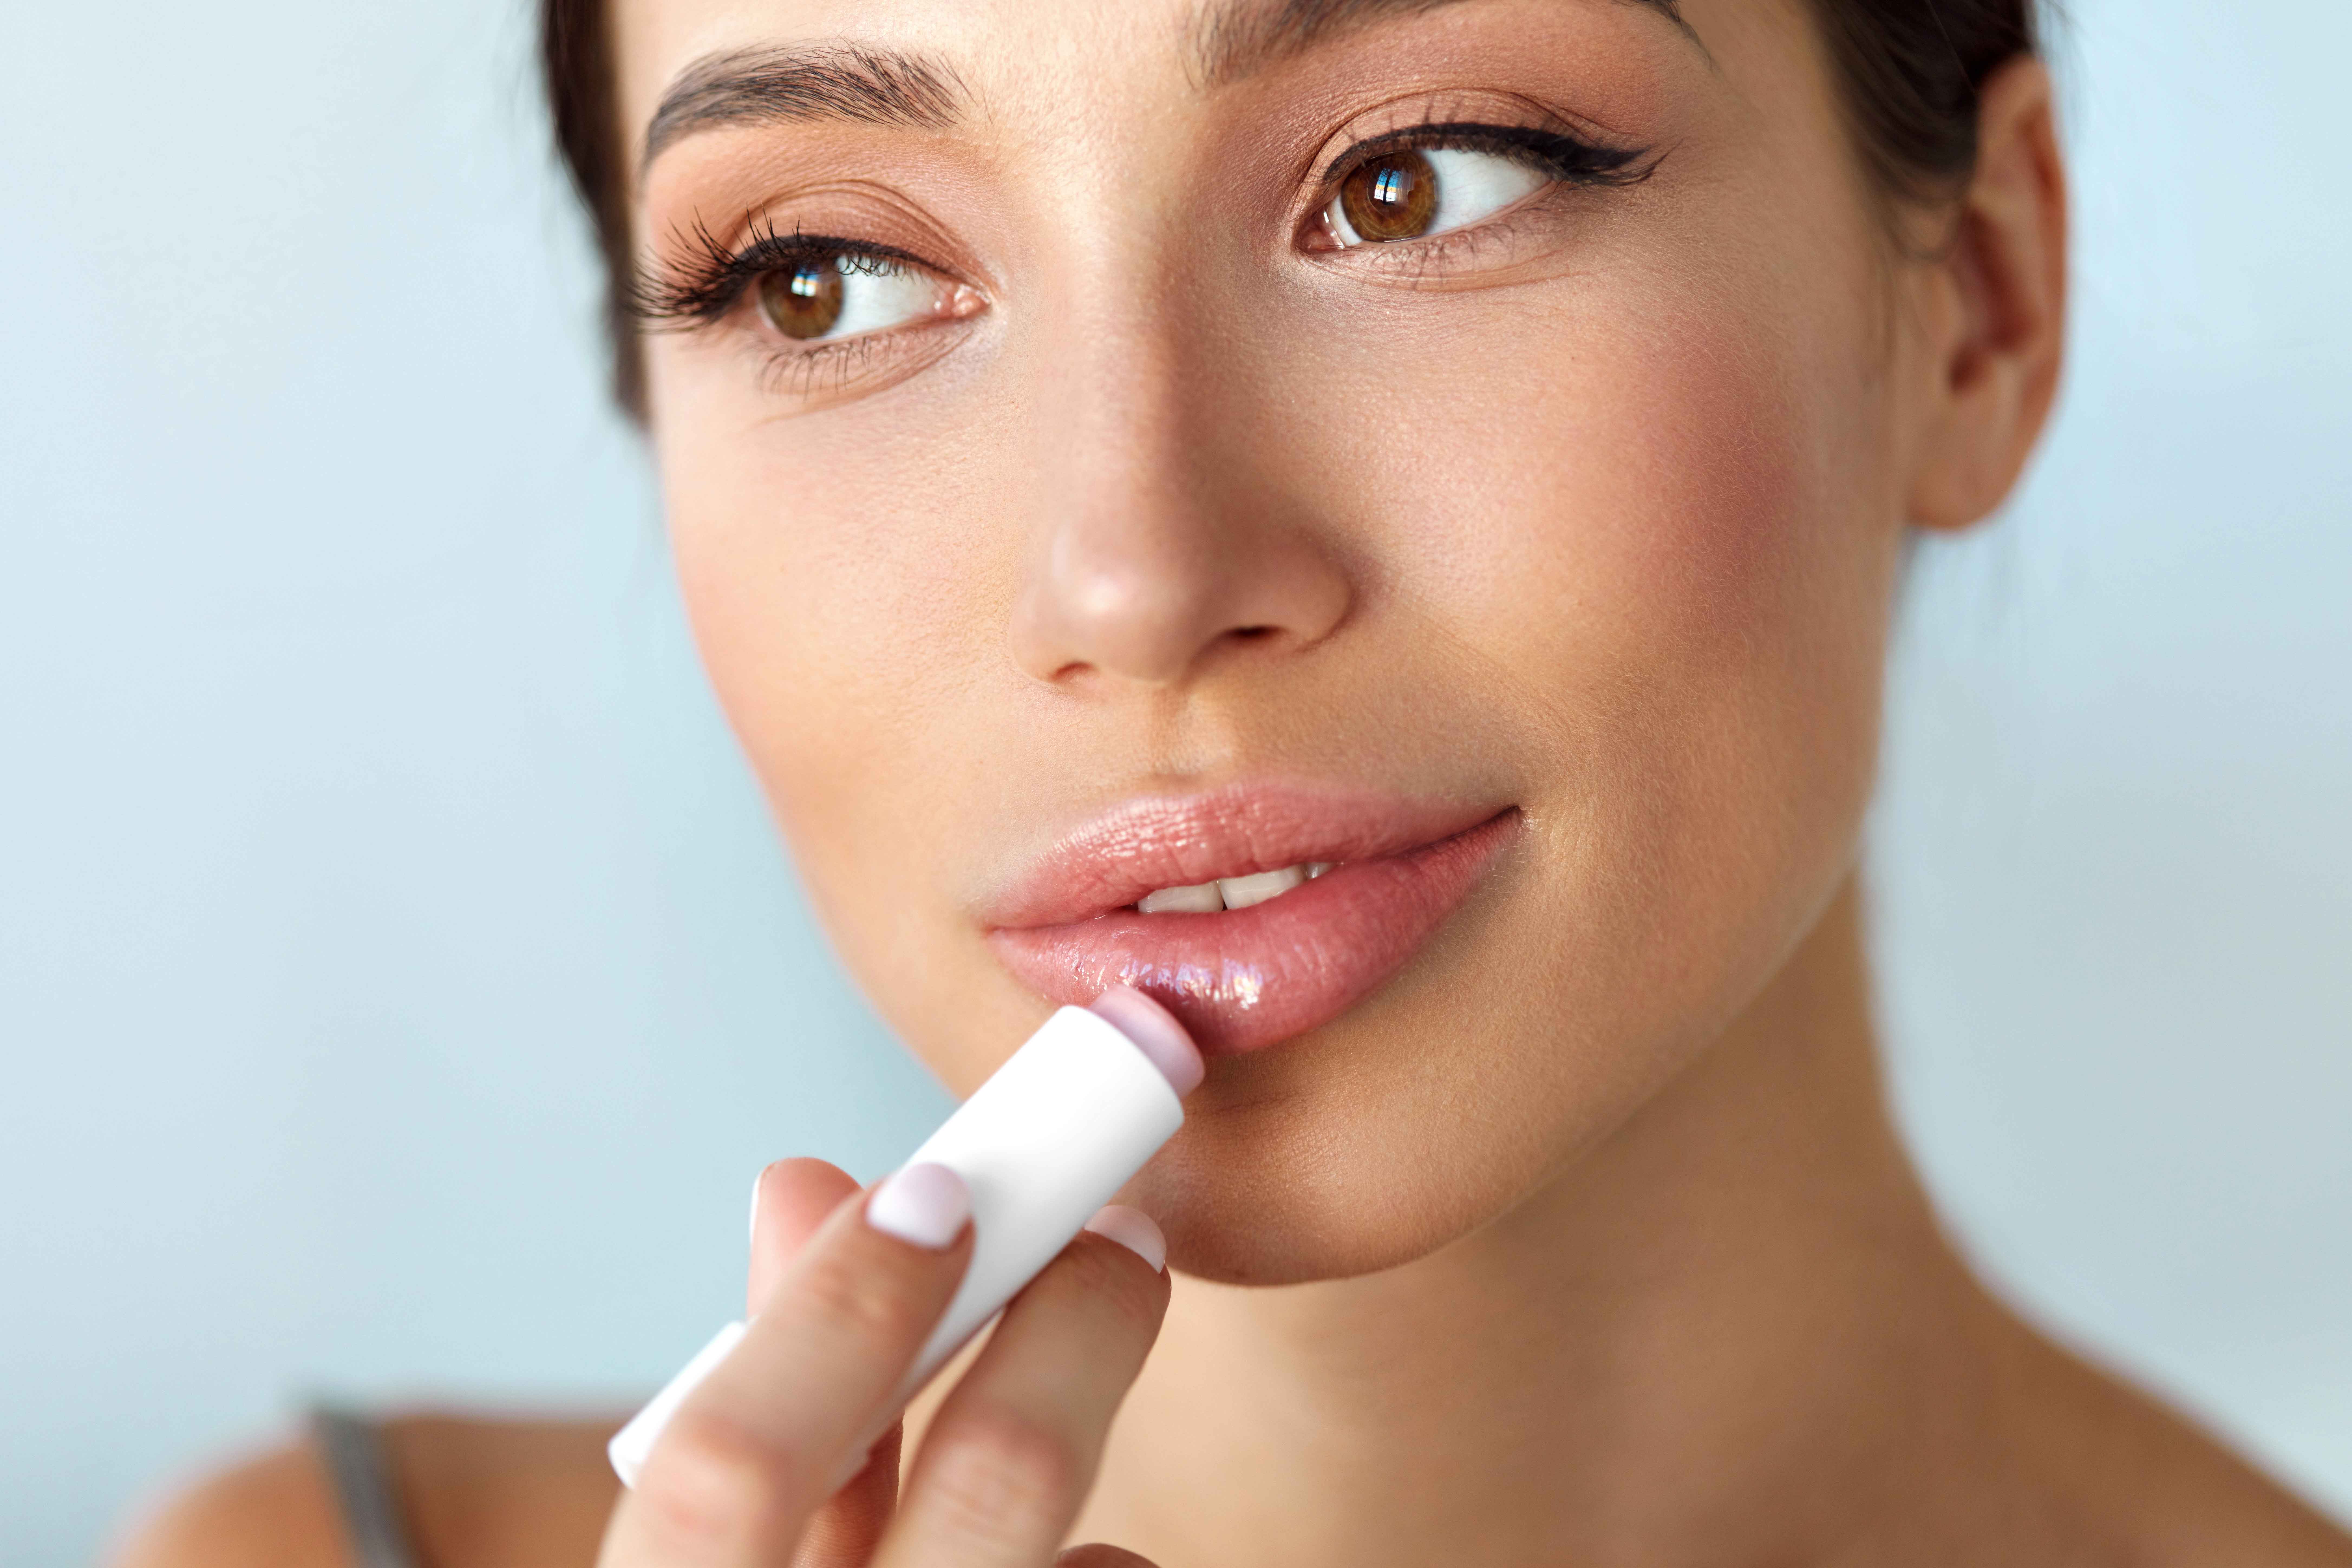 Female moisturizing lips